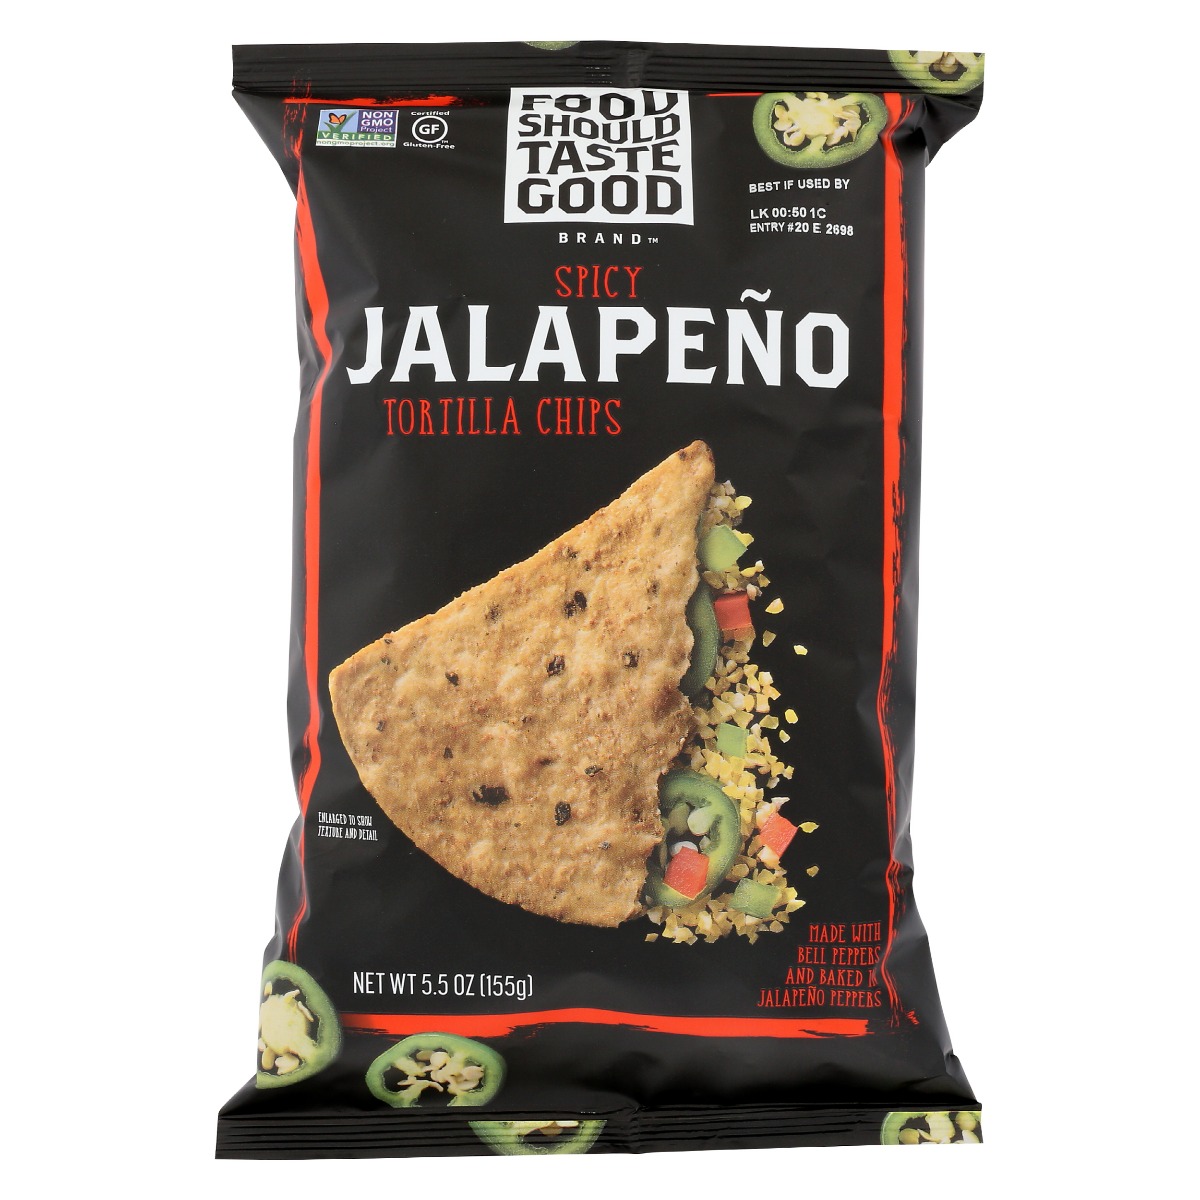 FOOD SHOULD TASTE GOOD: All Natural Tortilla Chips Jalapeno, 5.5 oz - 0021908812618